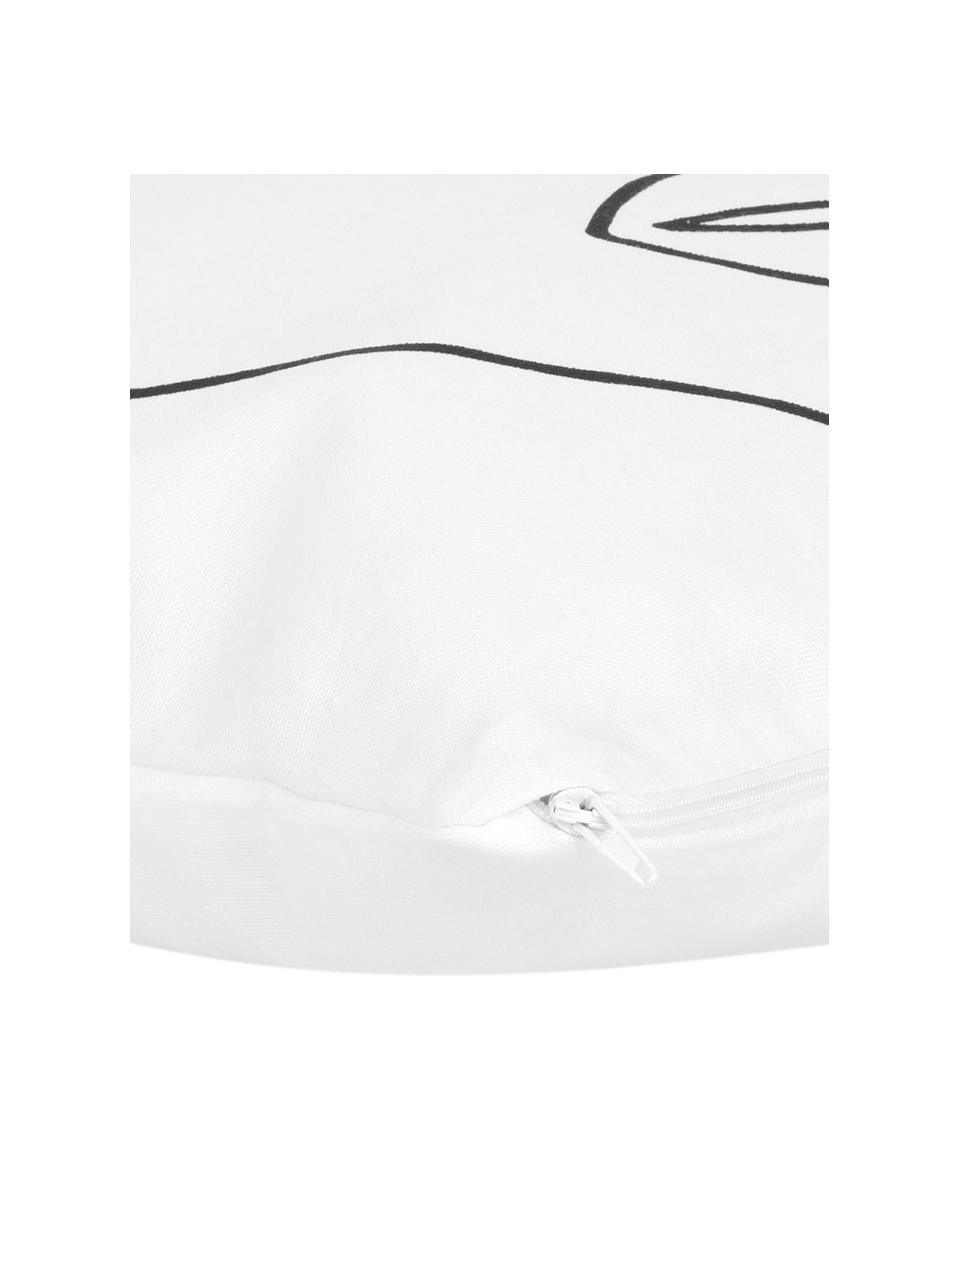 Federa arredo con disegno astratto Ariana, Bianco, nero, Larg. 40 x Lung. 40 cm